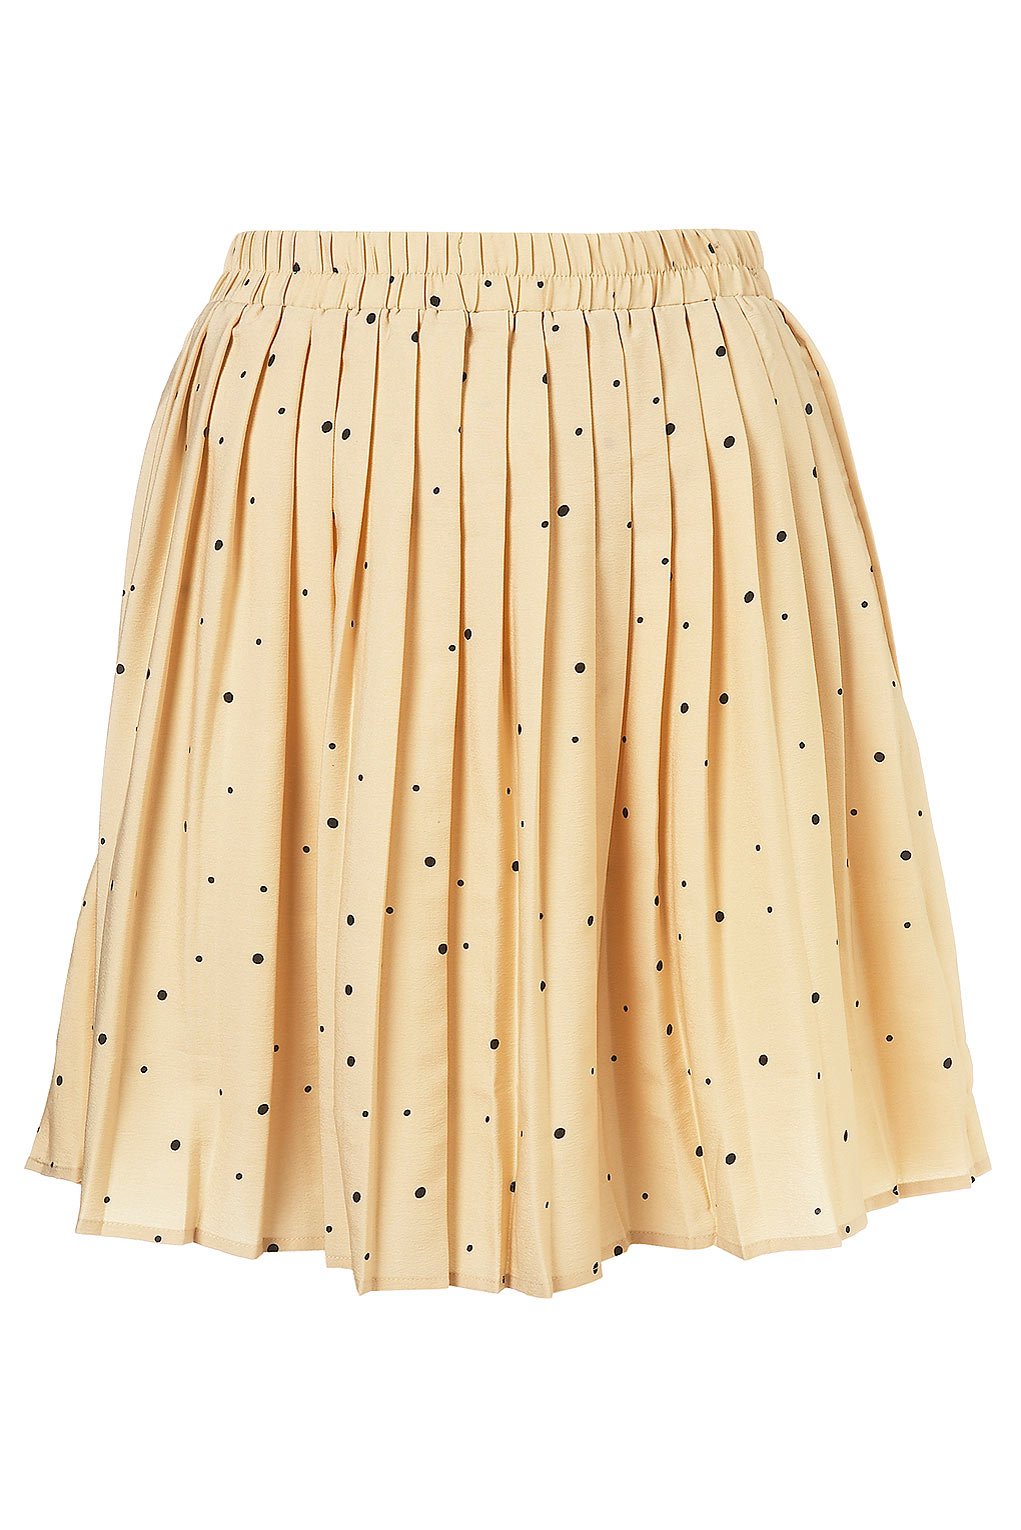 Topshop Dot Pleated Skirt.jpg